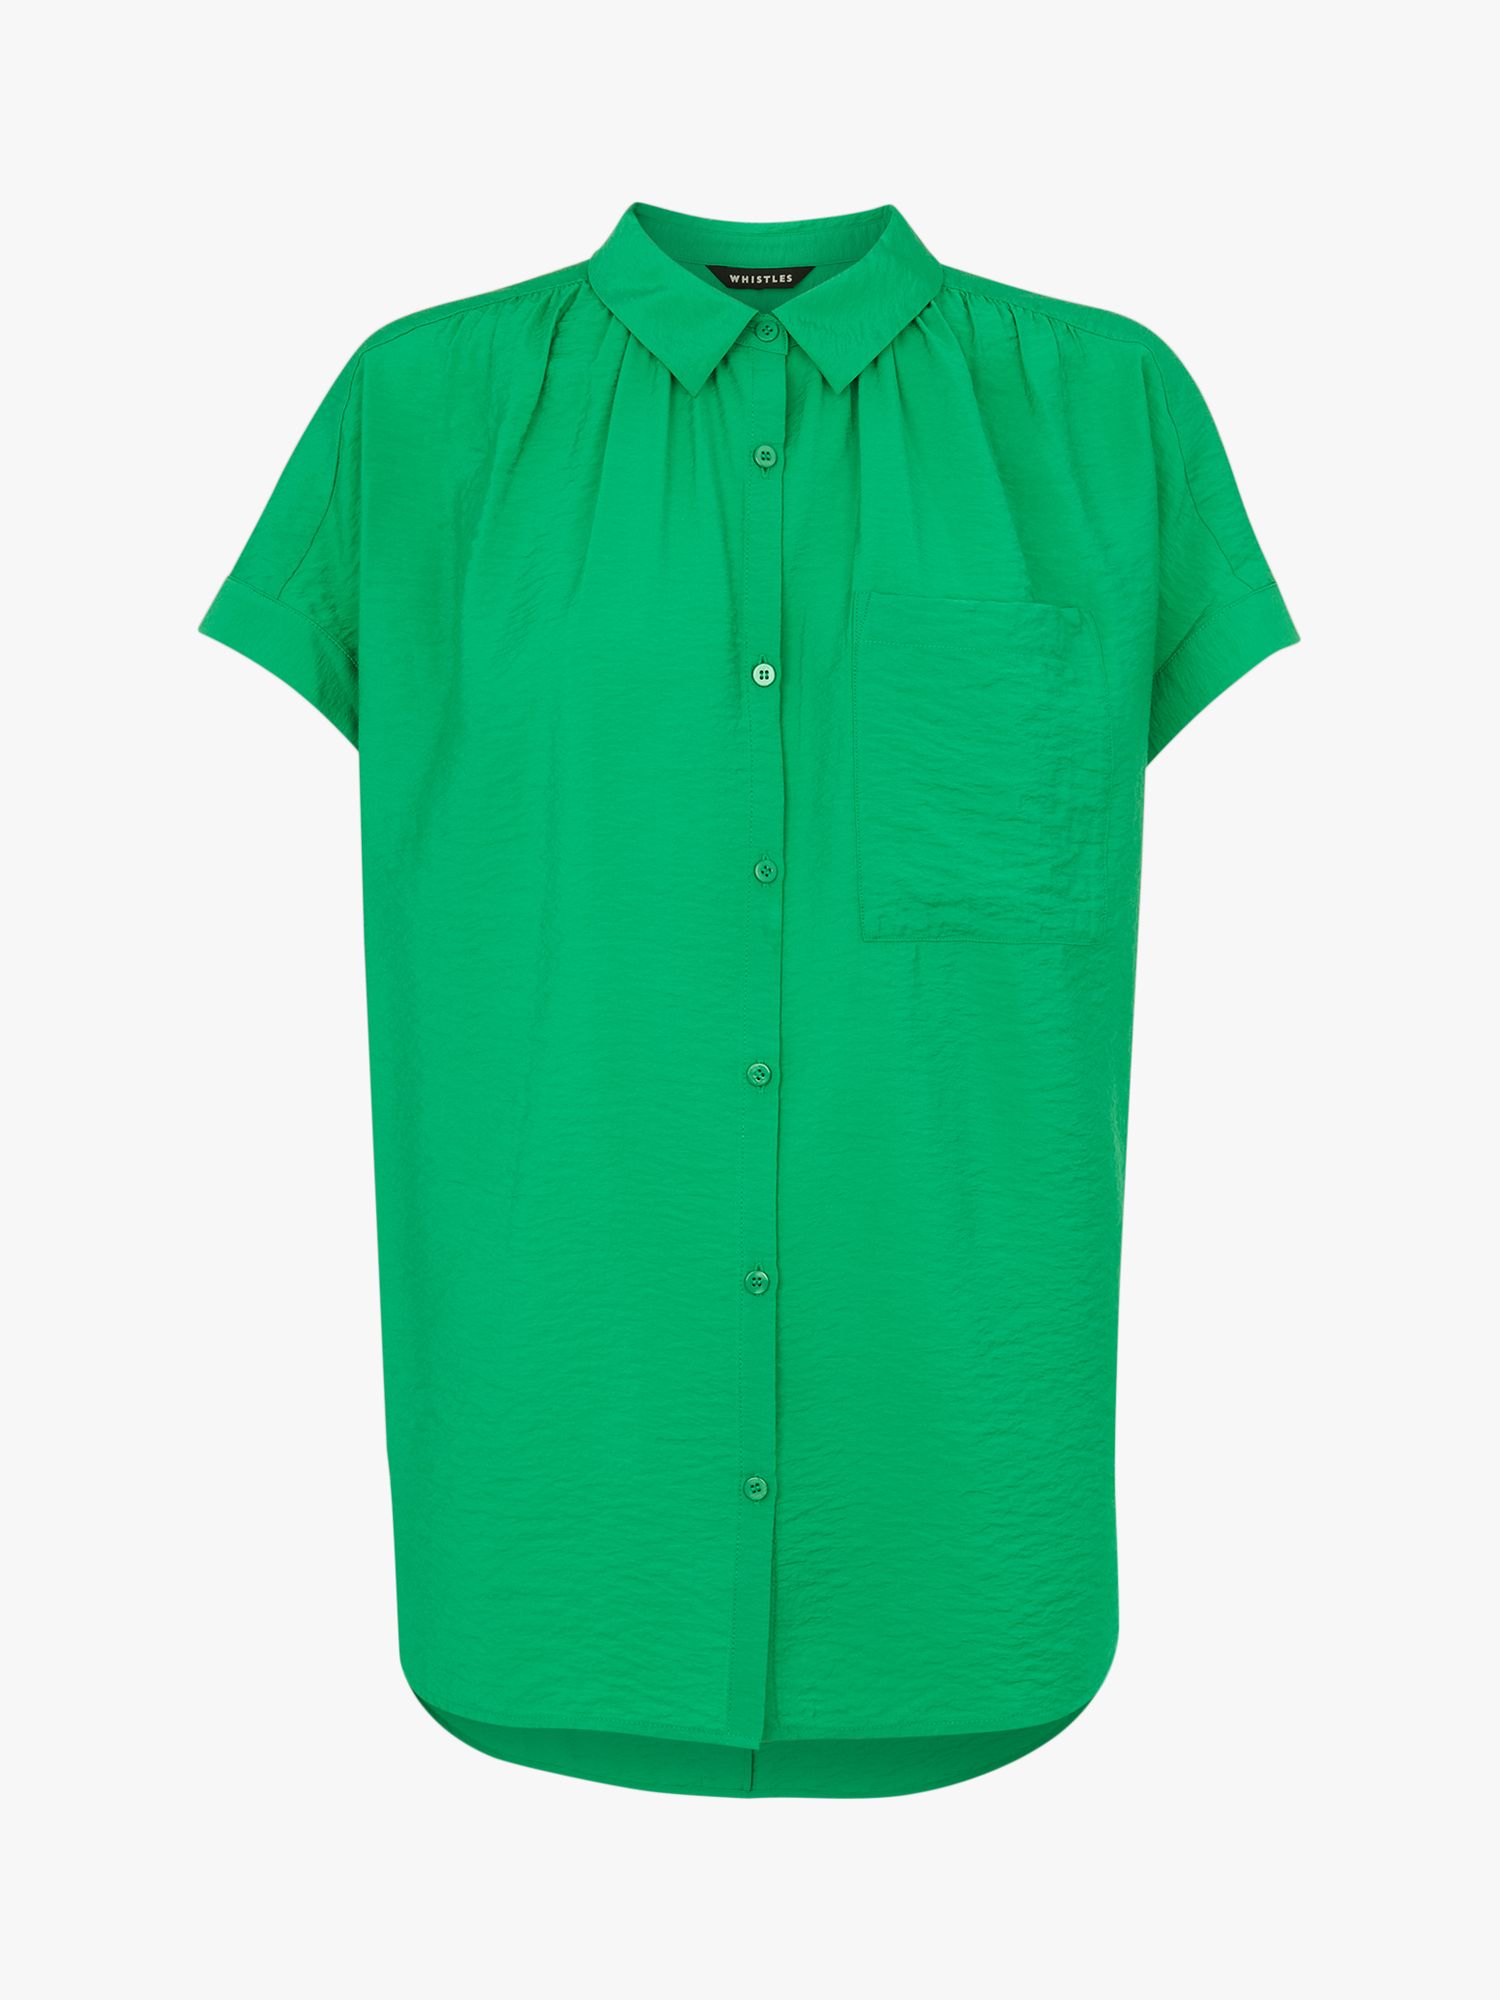 Whistles Petite Nicola Button Through Shirt, Green, M